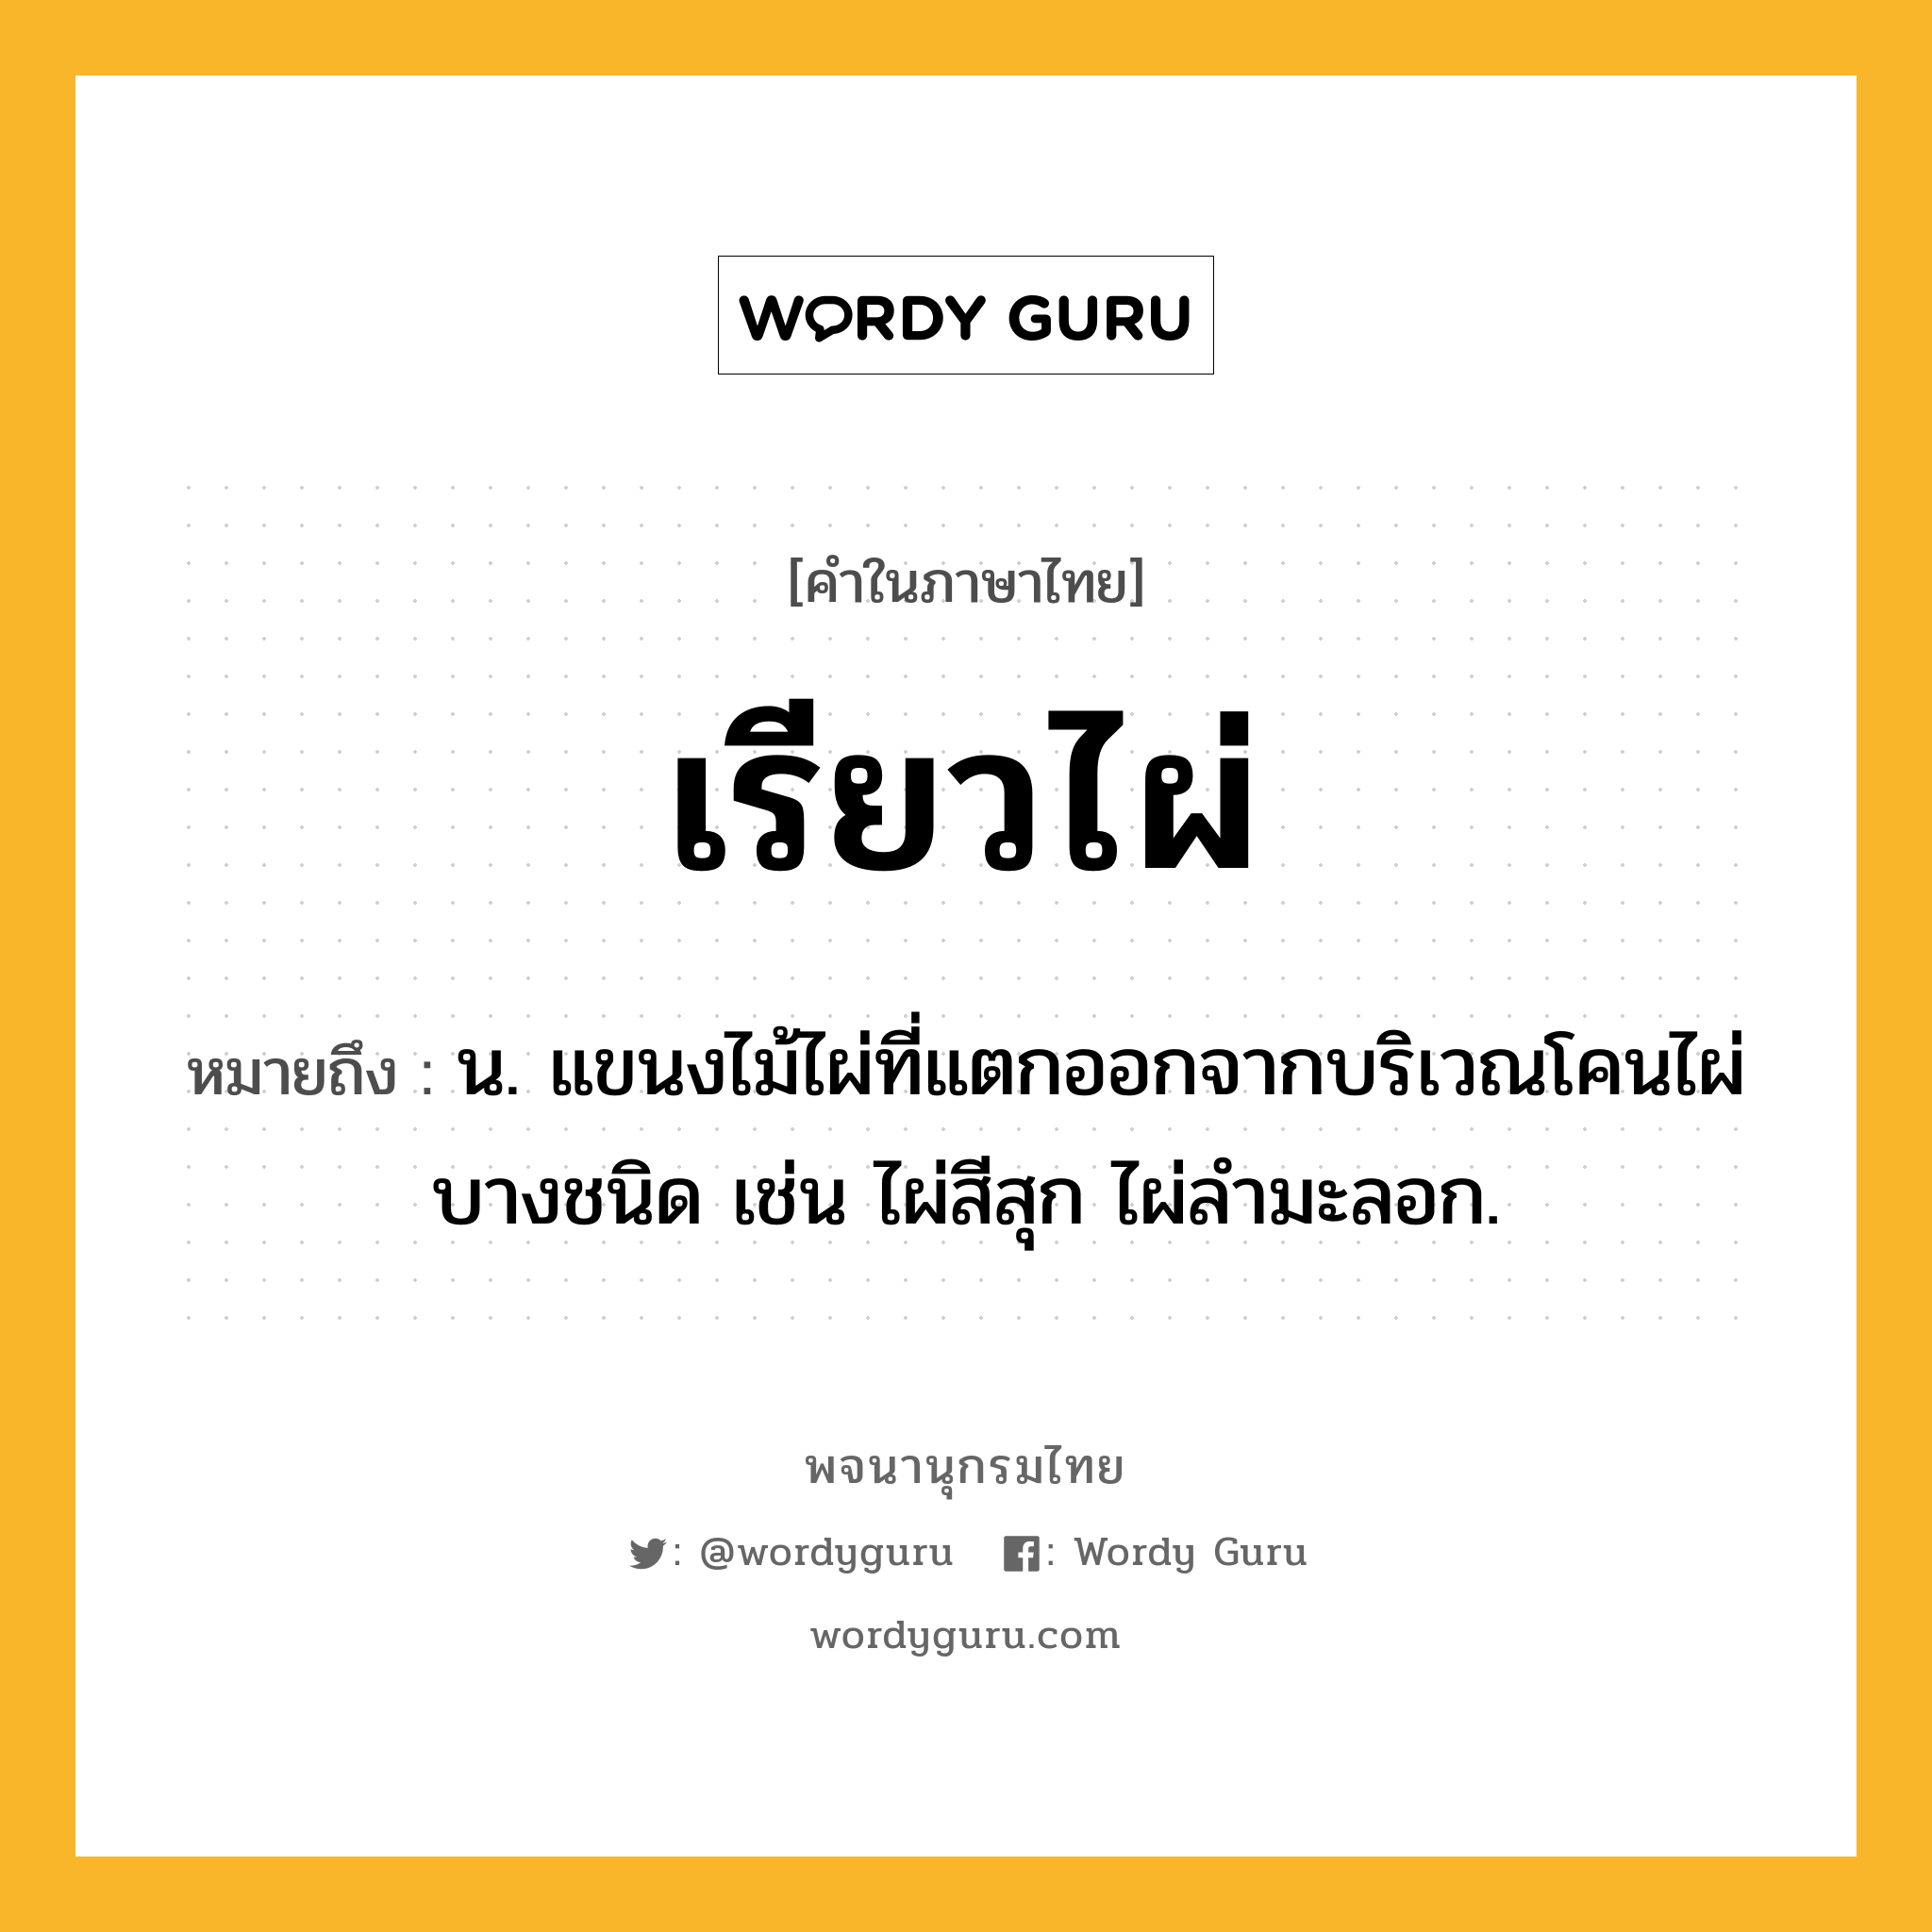 เรียวไผ่ ความหมาย หมายถึงอะไร?, คำในภาษาไทย เรียวไผ่ หมายถึง น. แขนงไม้ไผ่ที่แตกออกจากบริเวณโคนไผ่บางชนิด เช่น ไผ่สีสุก ไผ่ลำมะลอก.